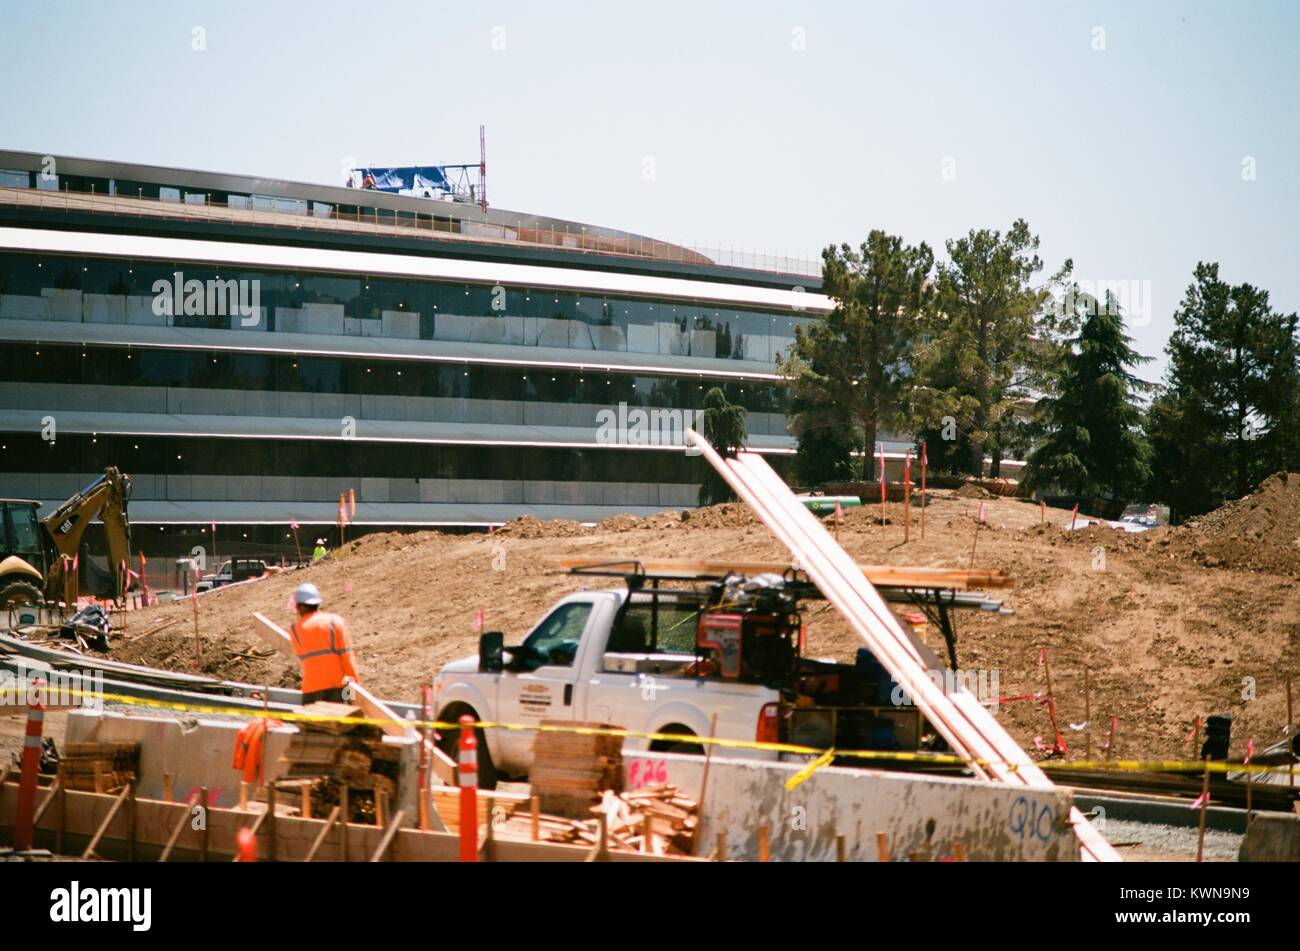 Les travailleurs de la construction, la manutention du bois d'avec les autres travailleurs visible sur le toit du bâtiment principal, à l'Apple Park, connu familièrement comme "le vaisseau spatial", le nouveau quartier général d'Apple Inc dans la Silicon Valley ville de Cupertino, Californie, 25 juillet 2017. Banque D'Images